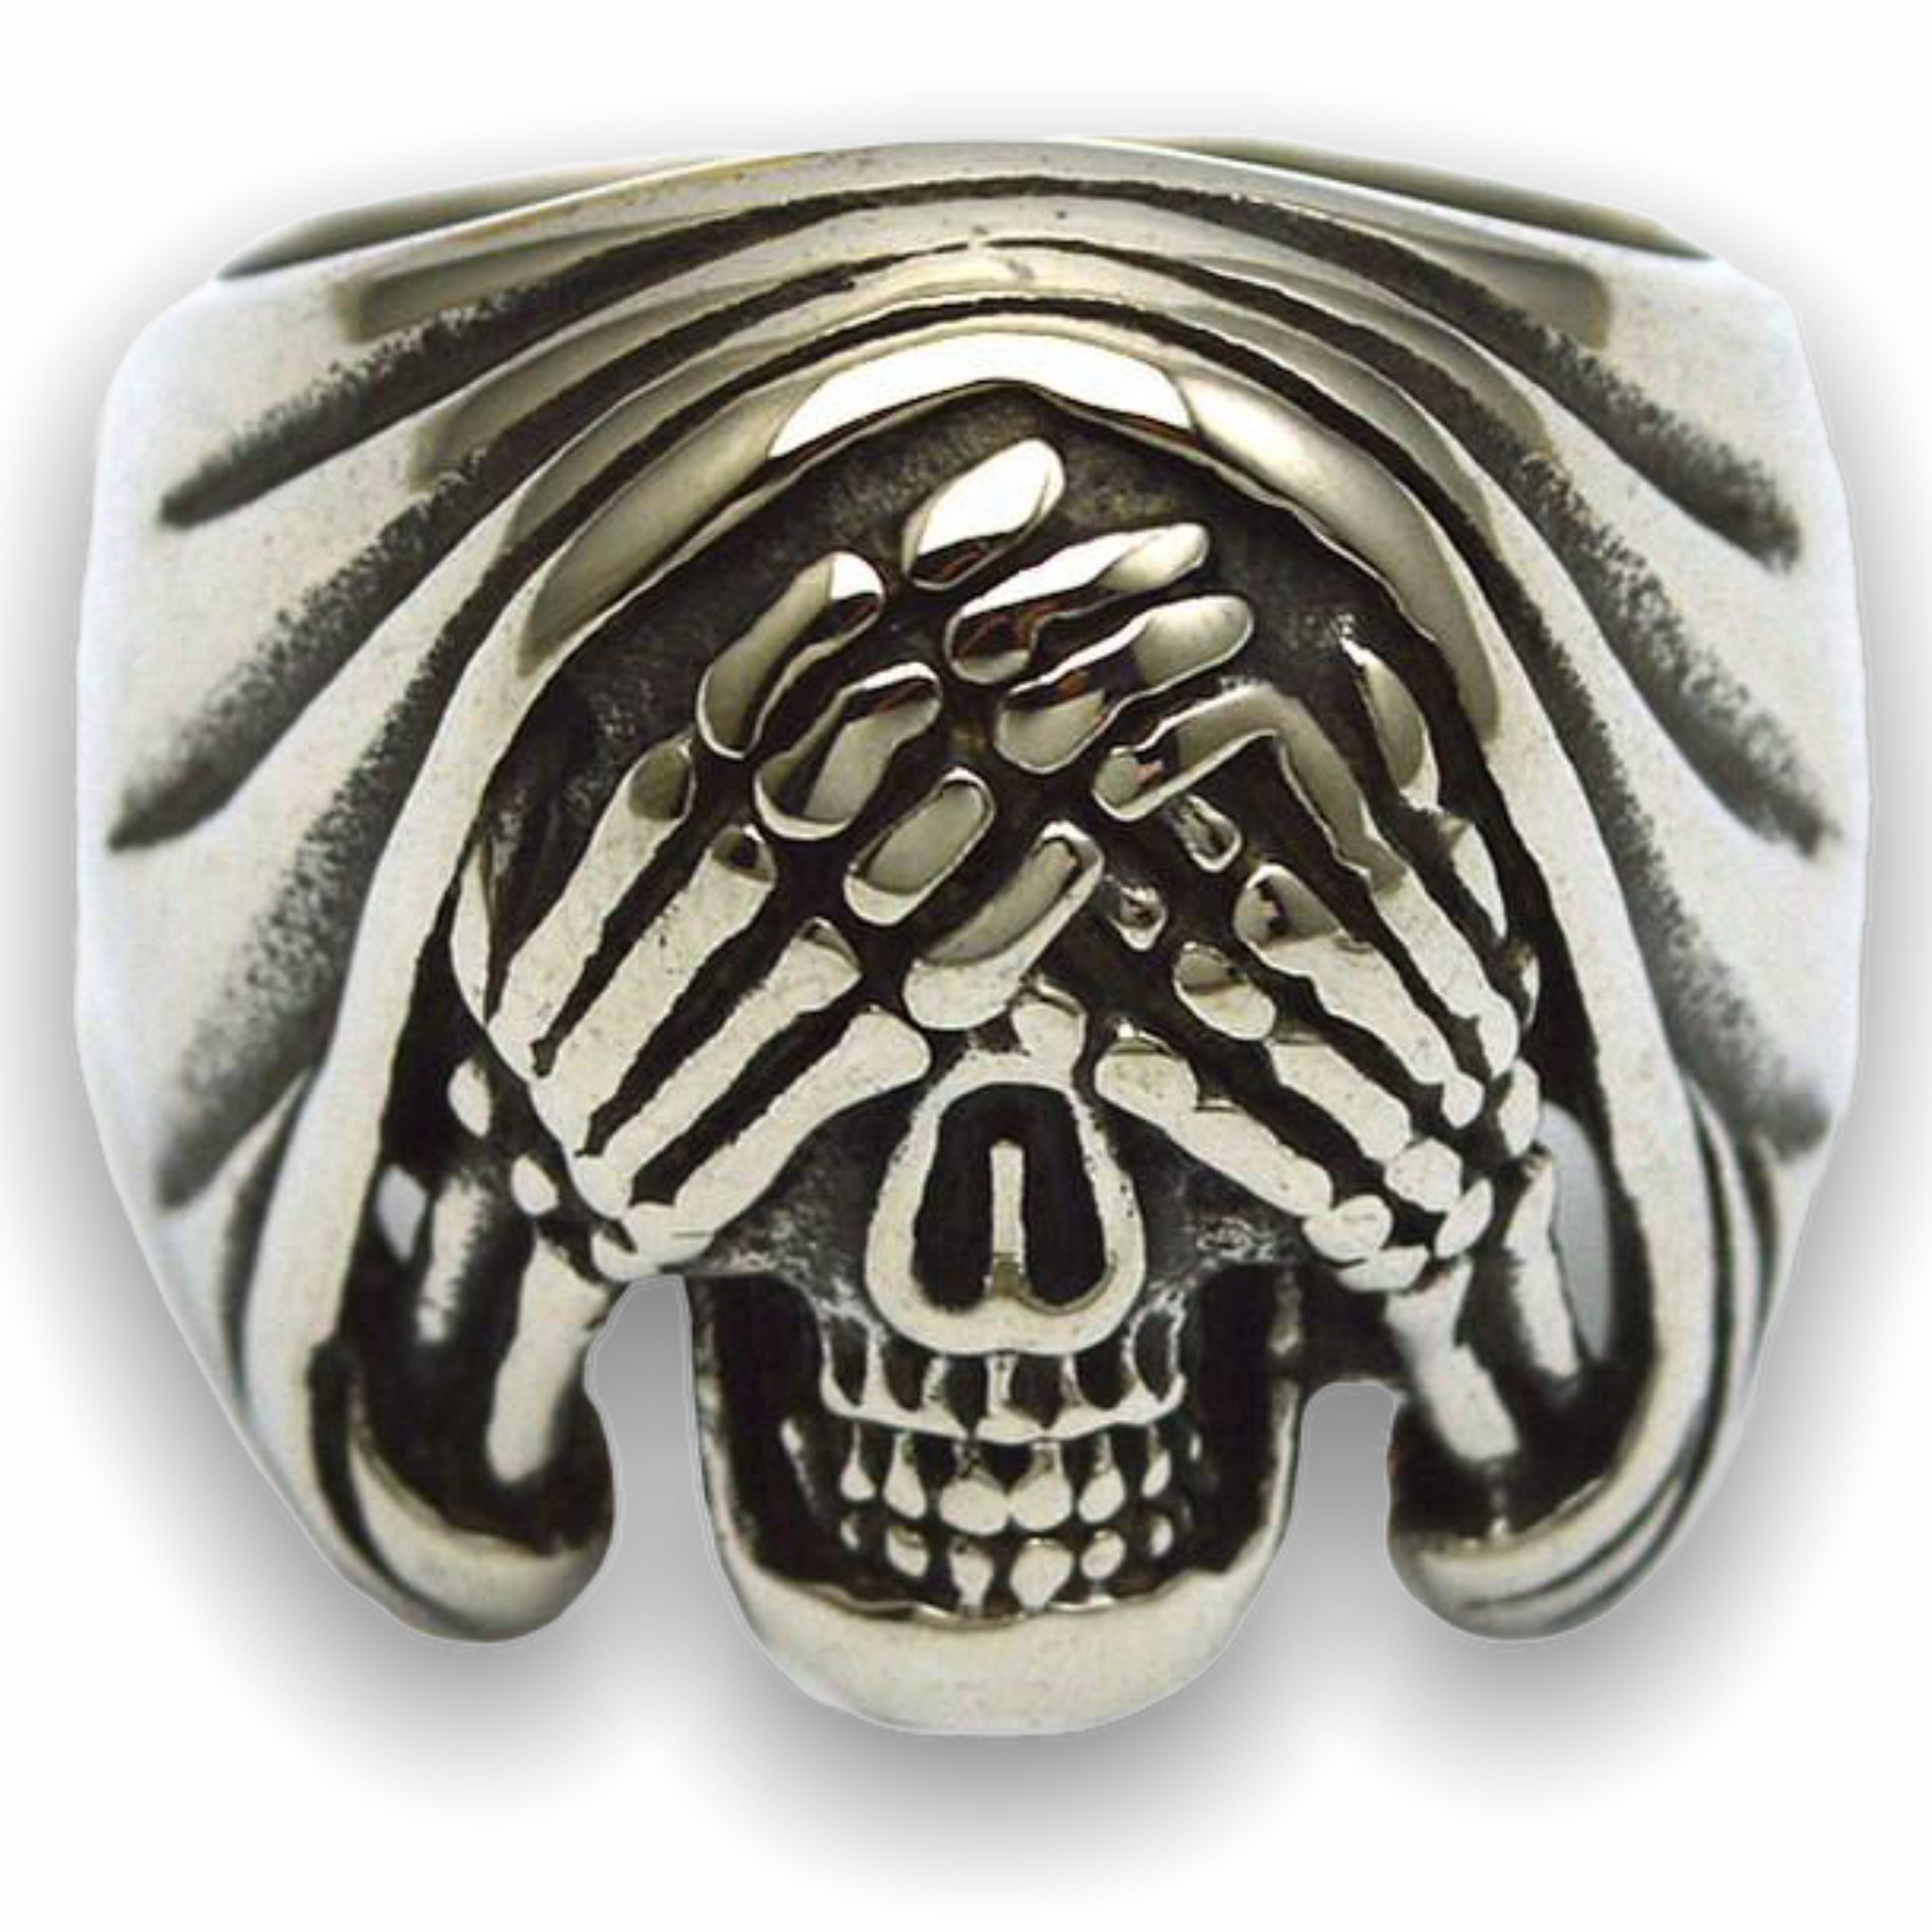 Skull Ring in Stainless Steel